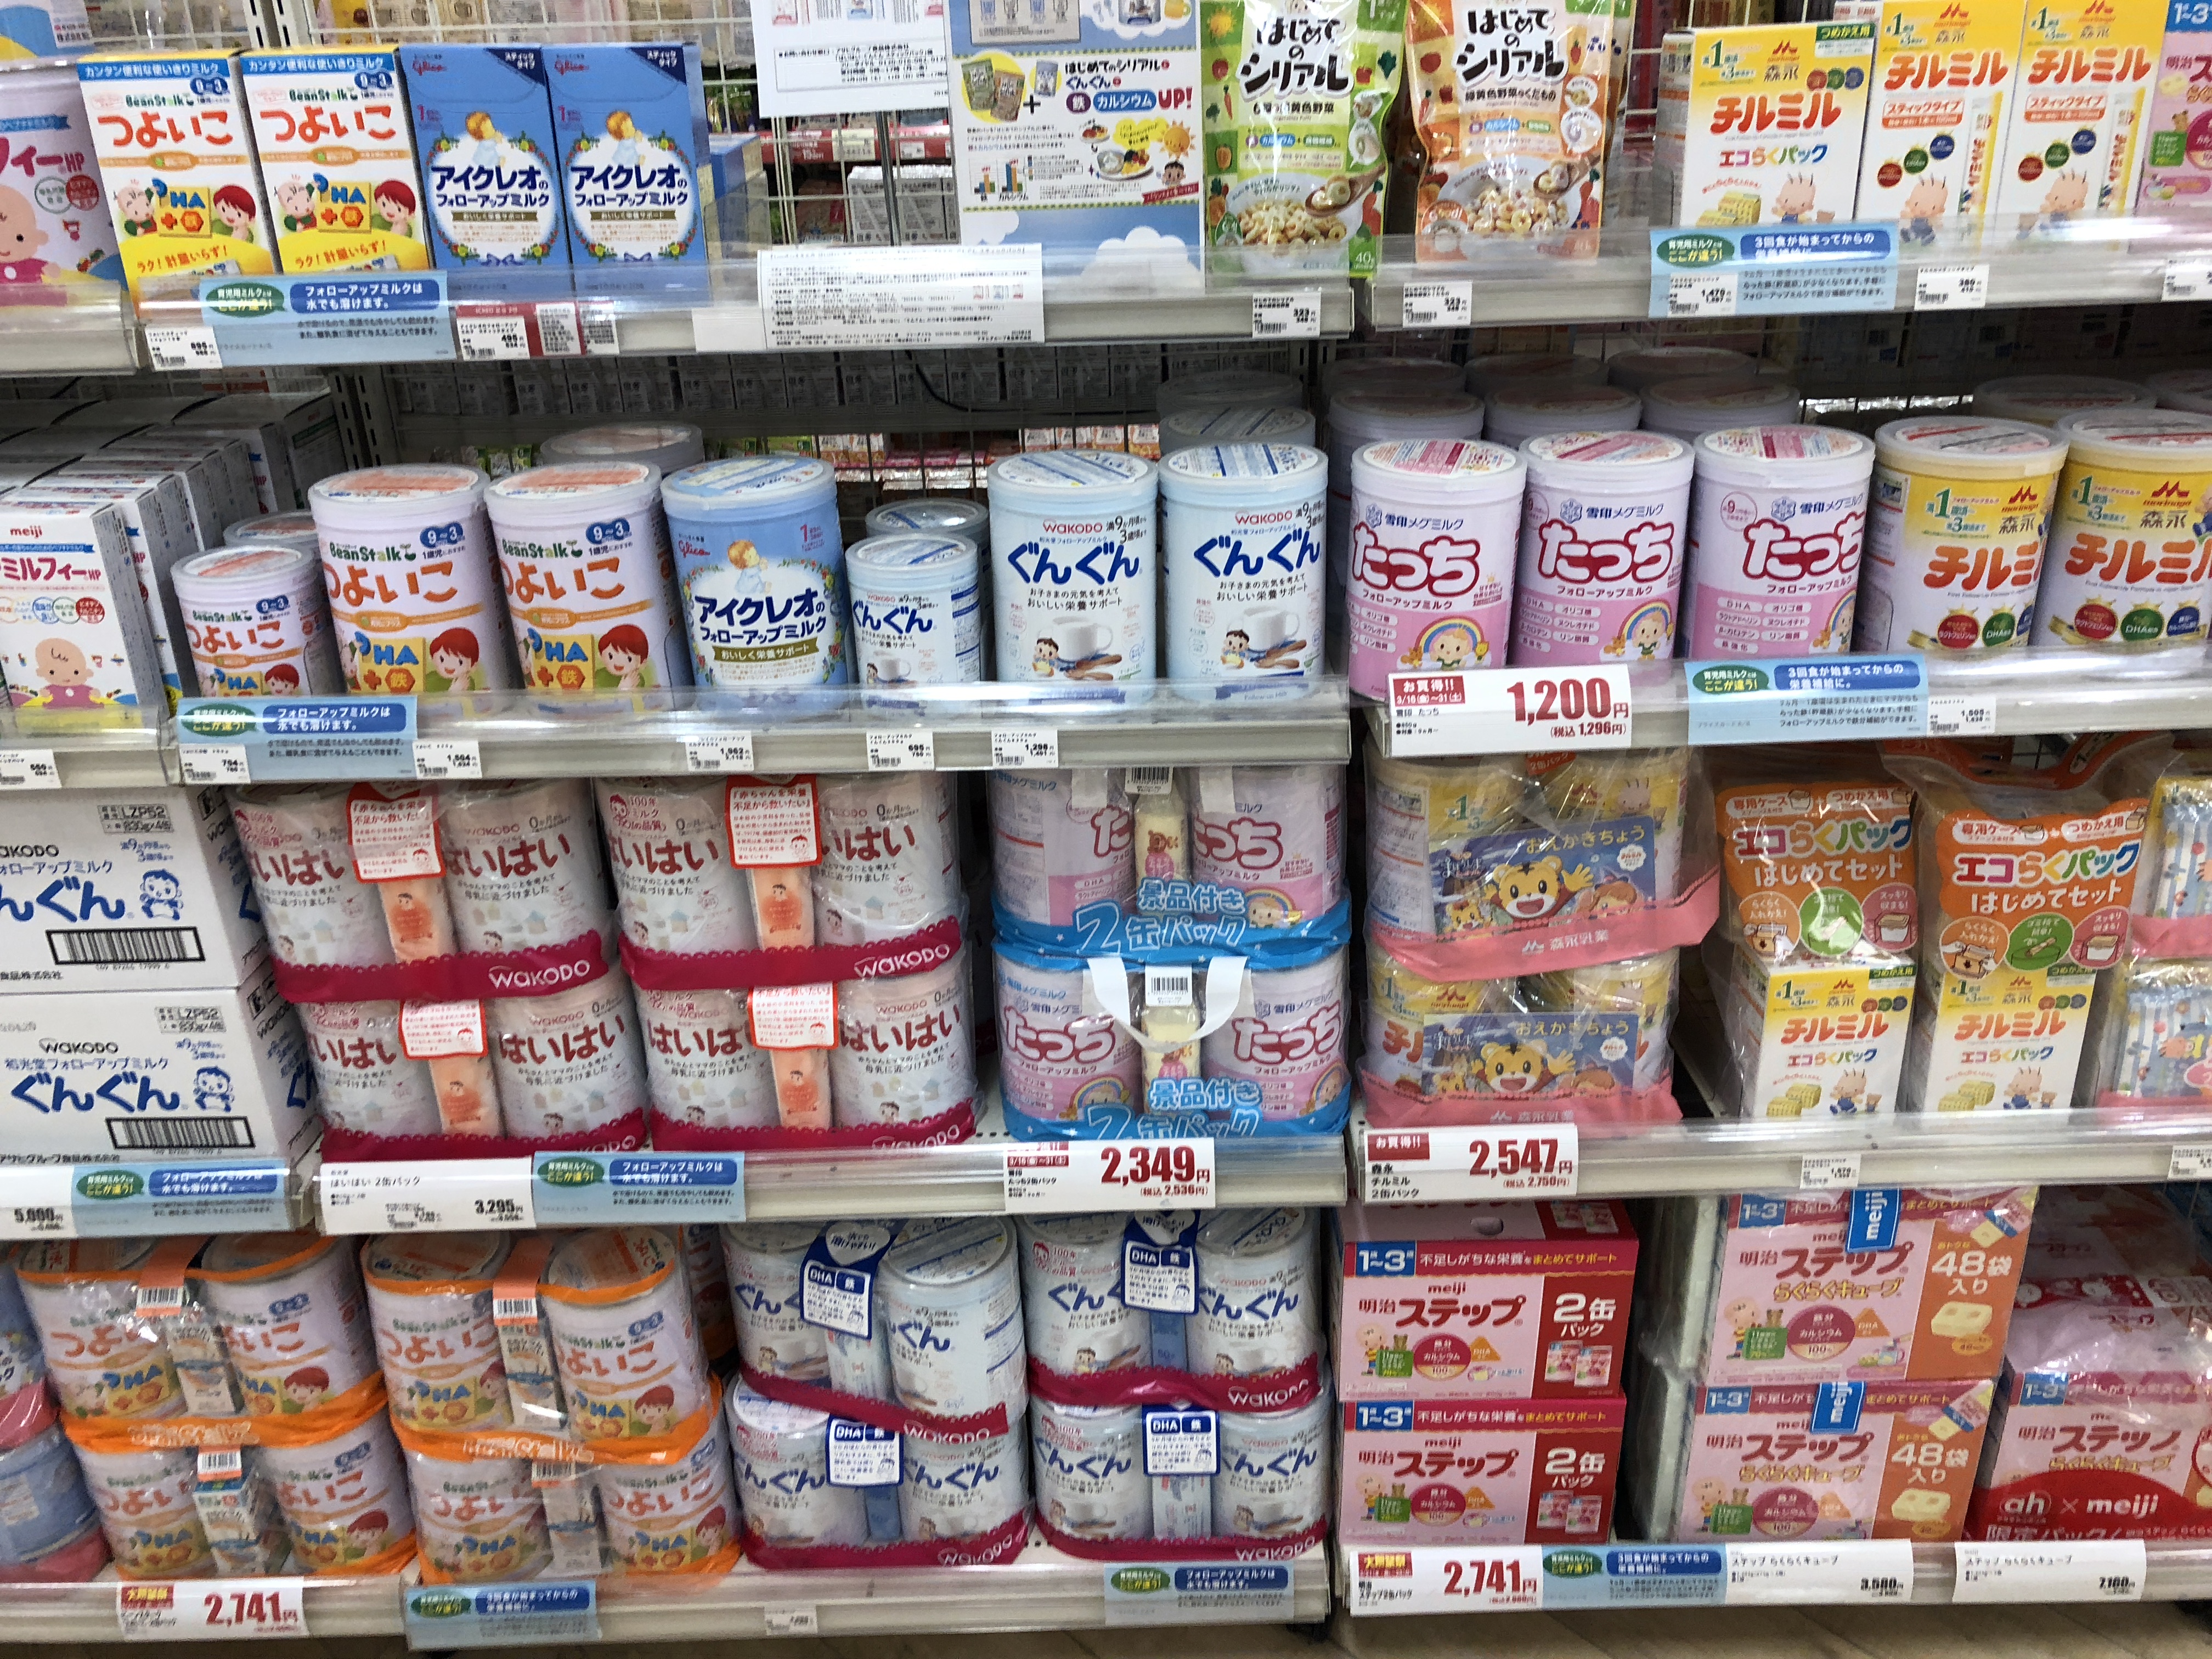 亲们,去北海道适合买婴幼产品吗?